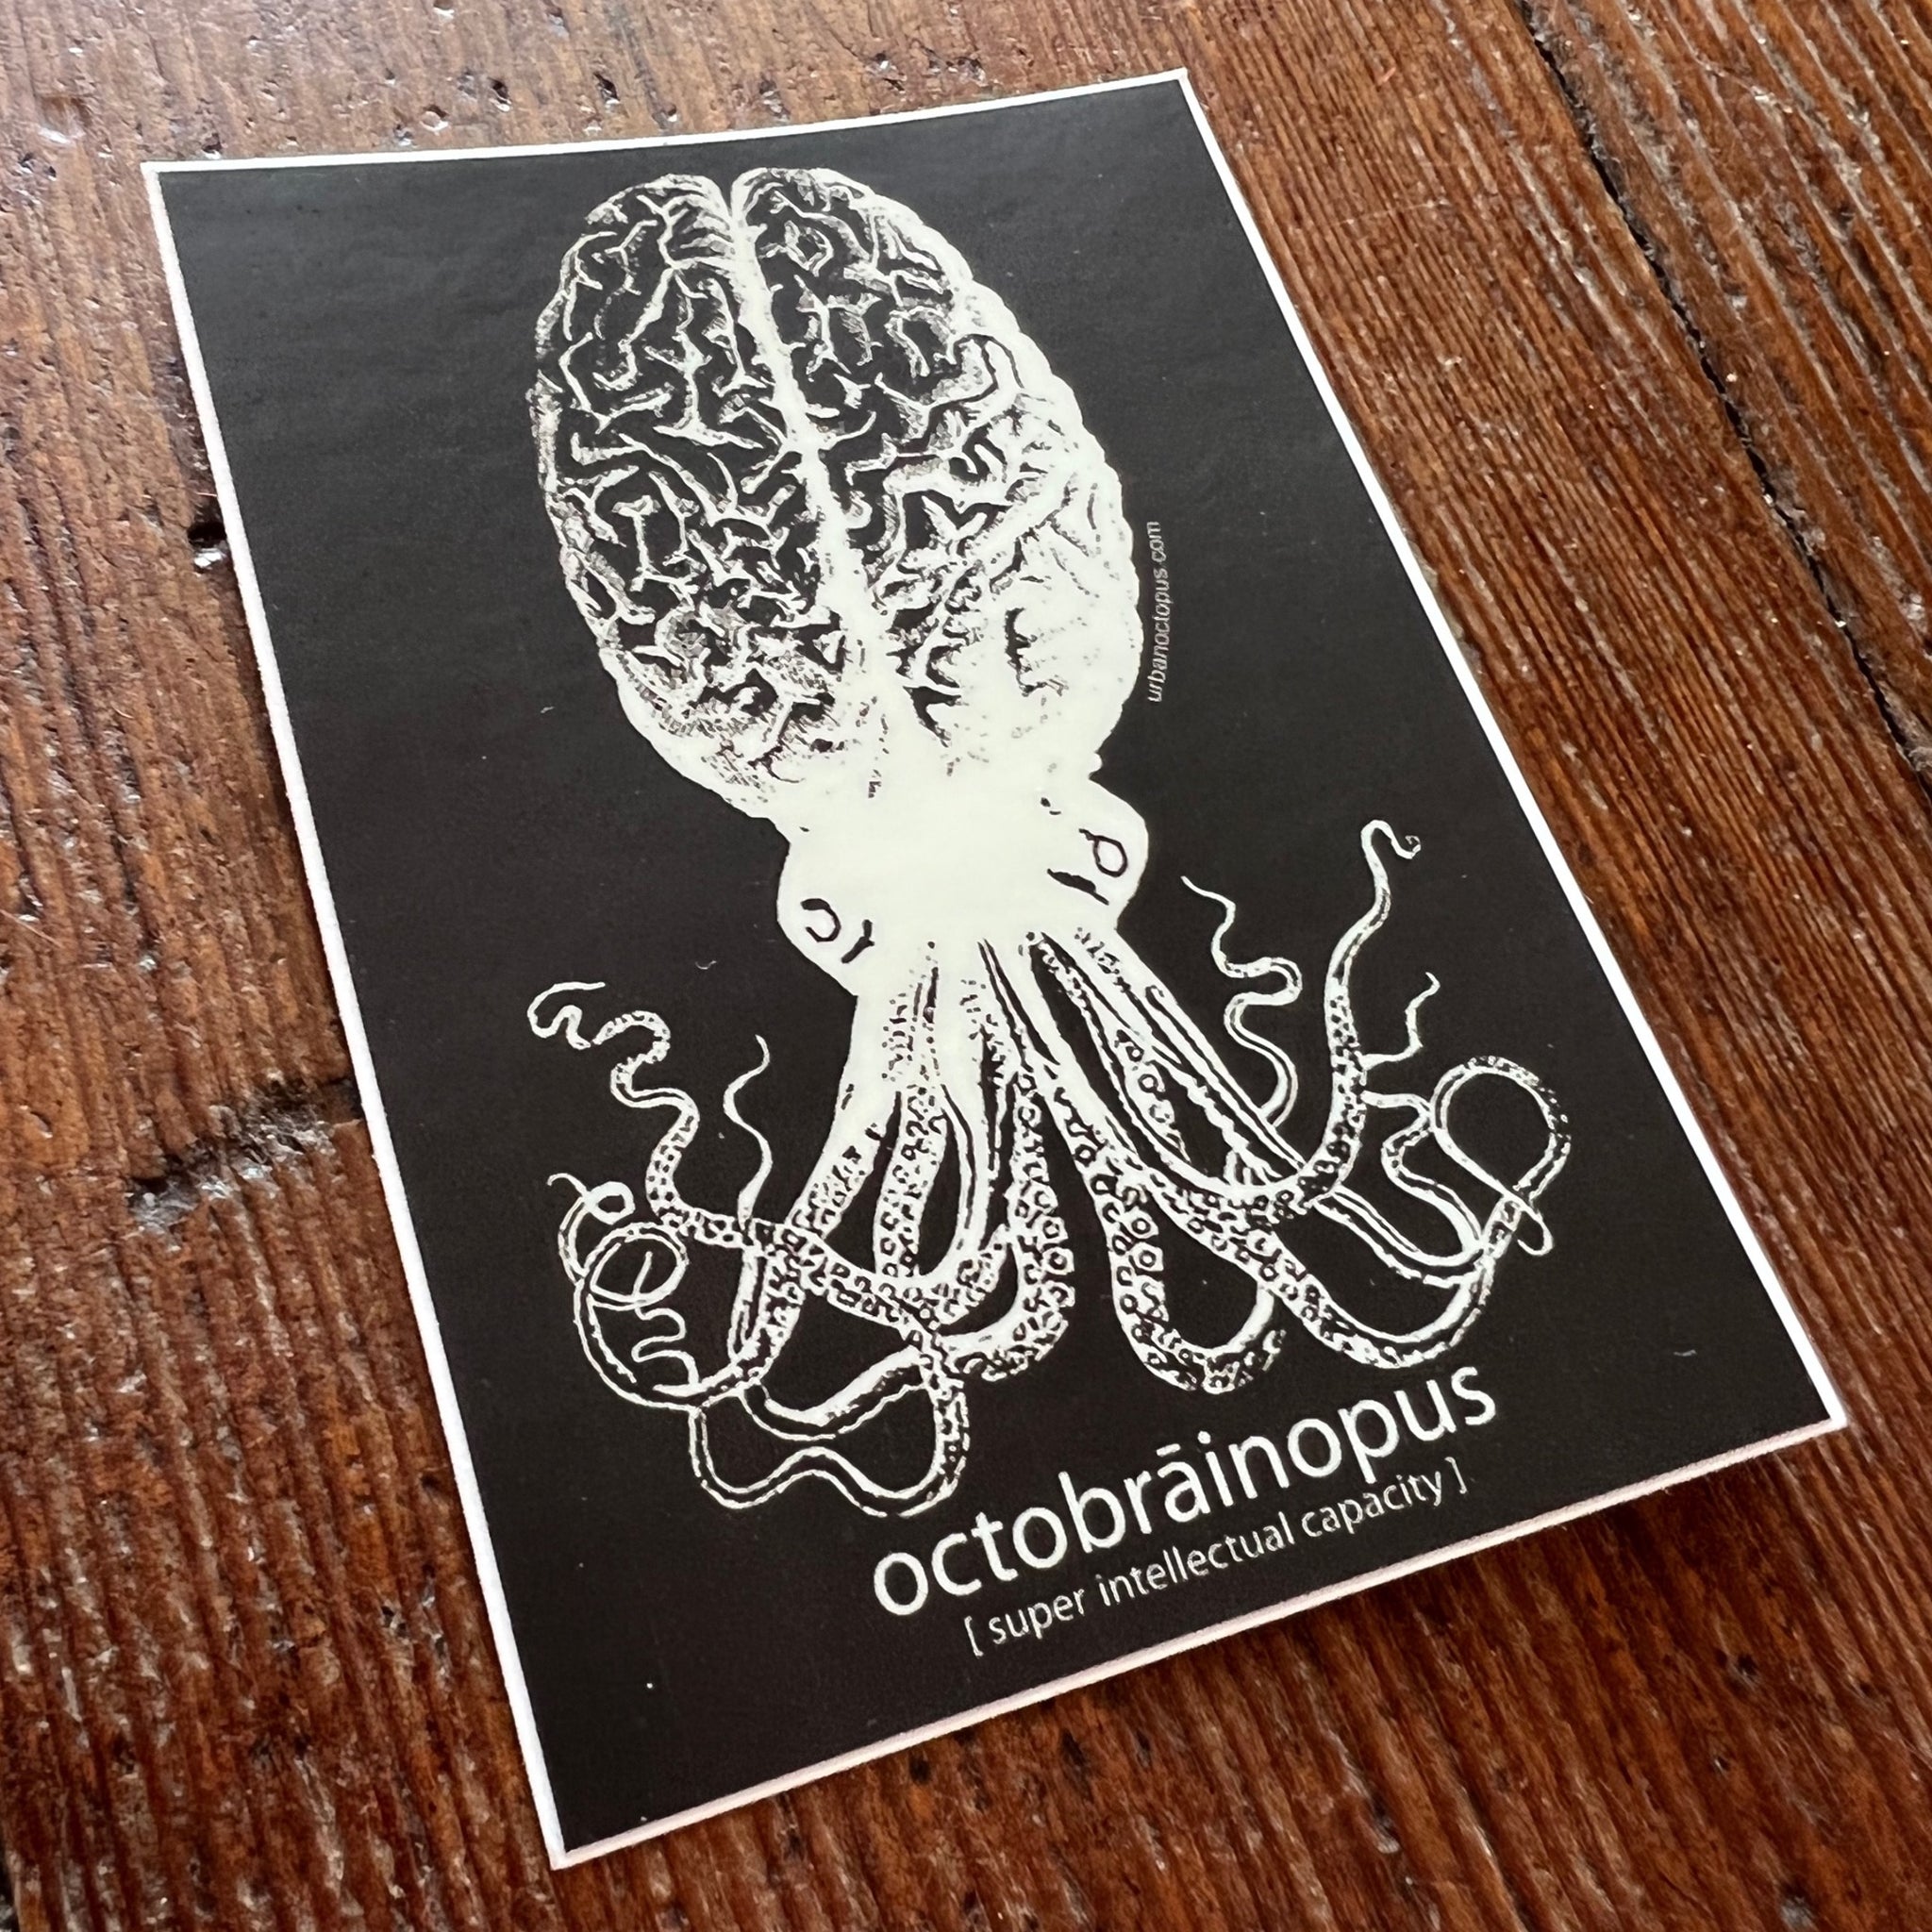 Octobrāinopus Sticker